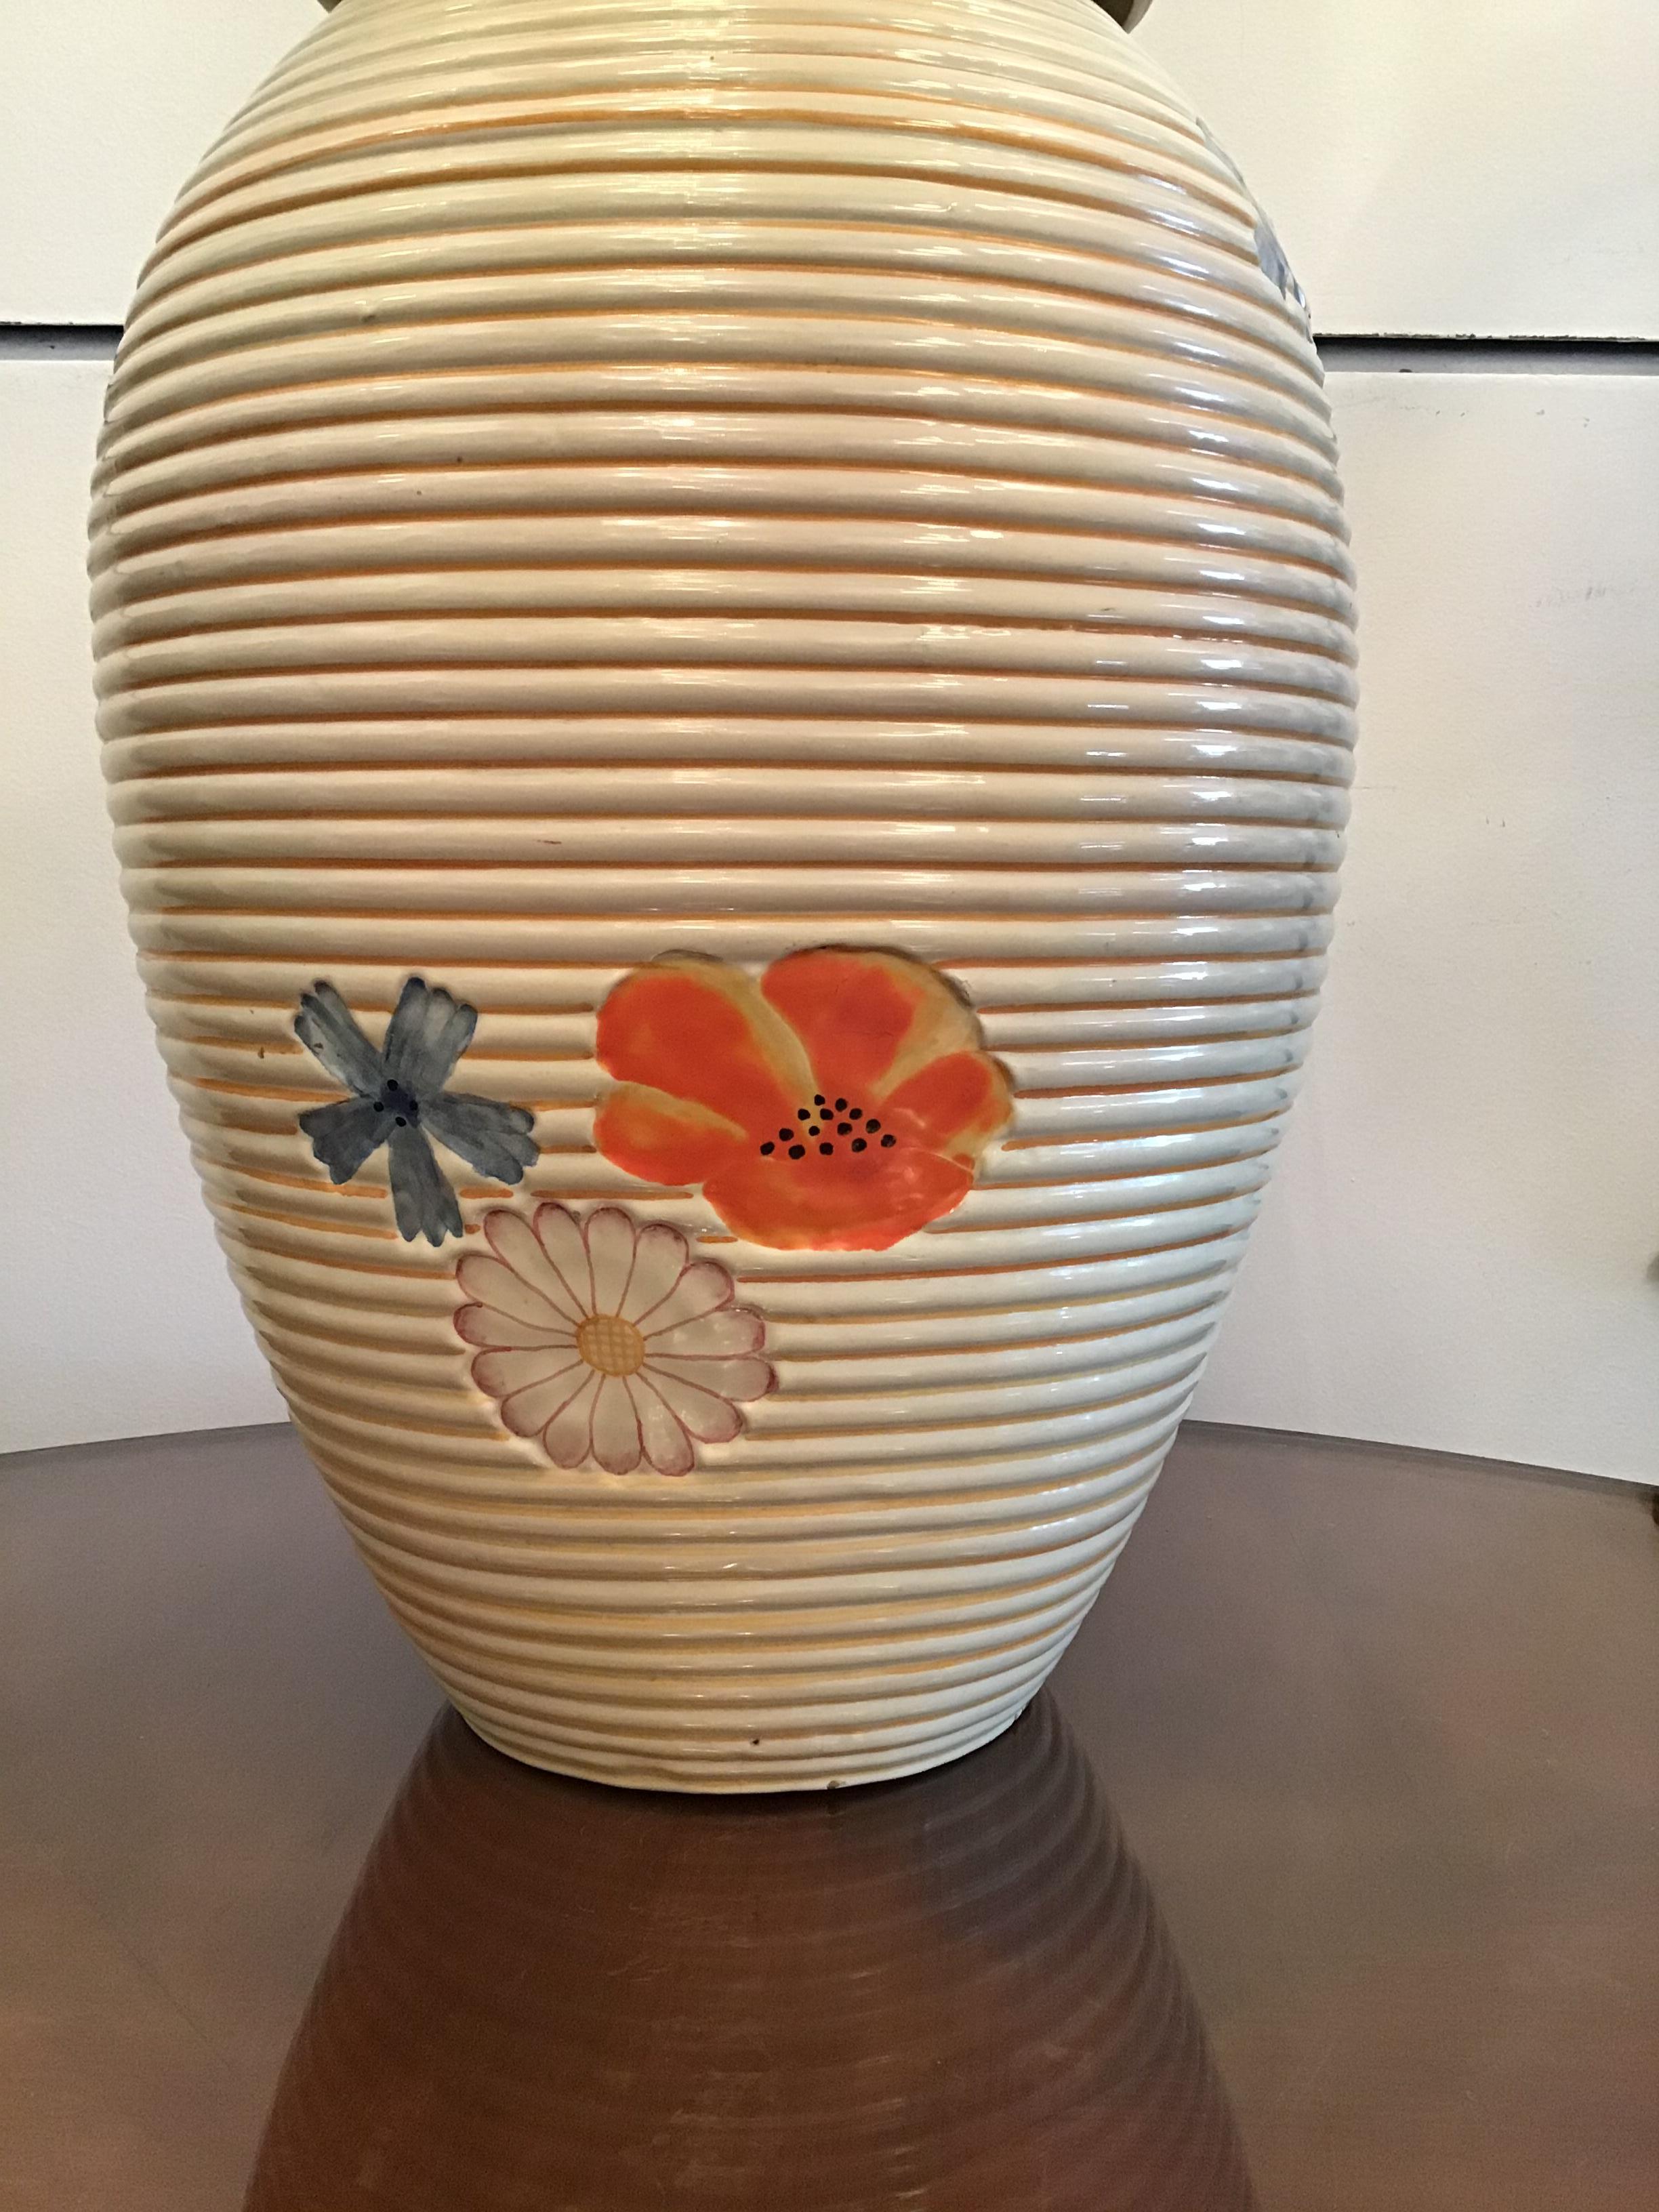 Pucci Umbertide Vase /Umbrella Stand Ceramic, 1950, Italy For Sale 8